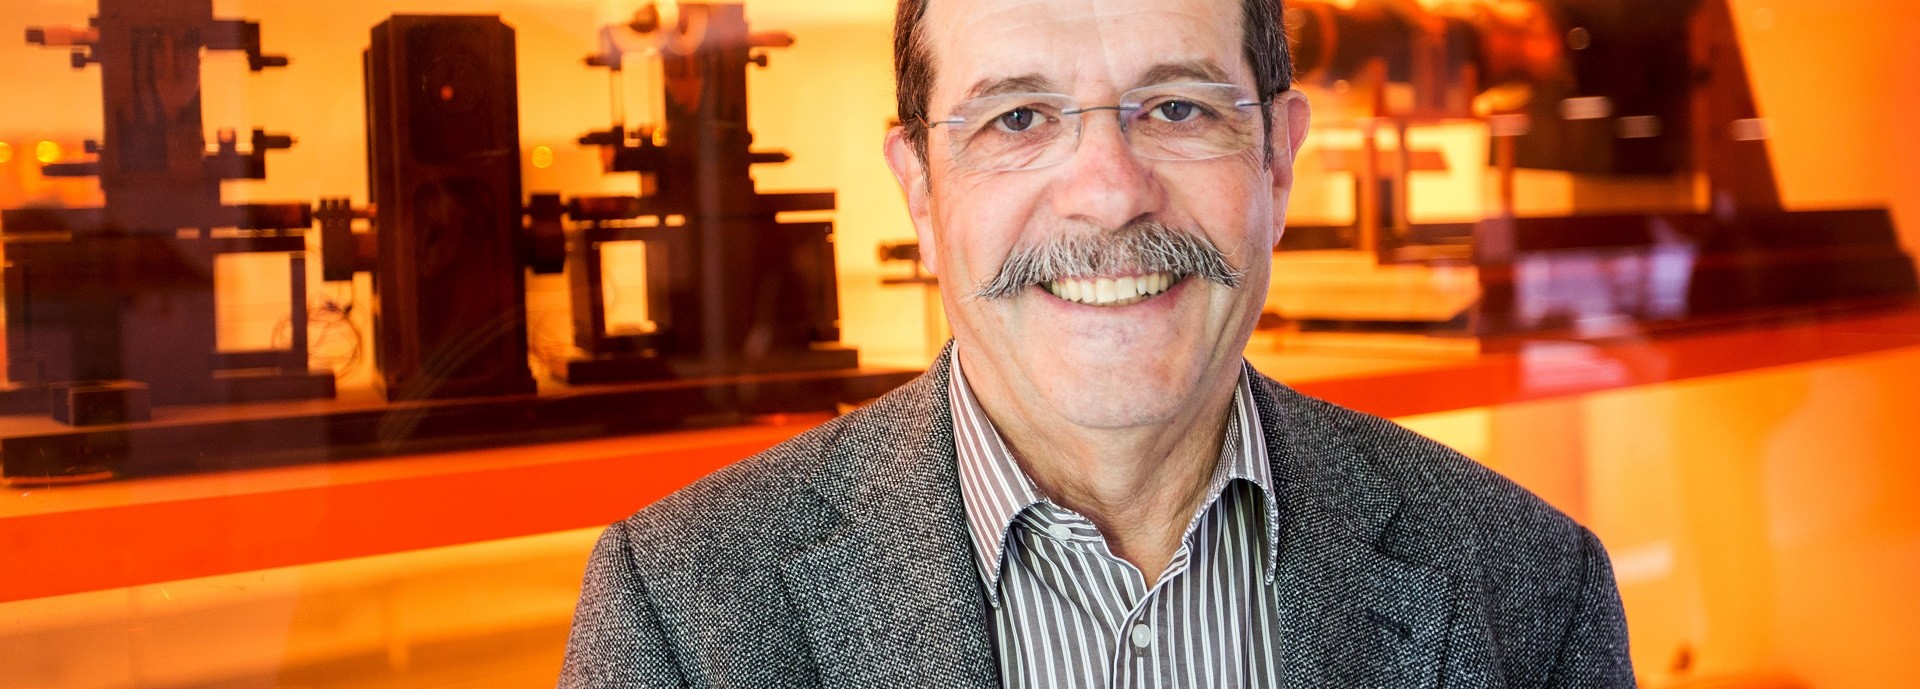 Physique quantique : les travaux d'Alain Aspect, professeur à l’X, couronnés du Prix Nobel 2022